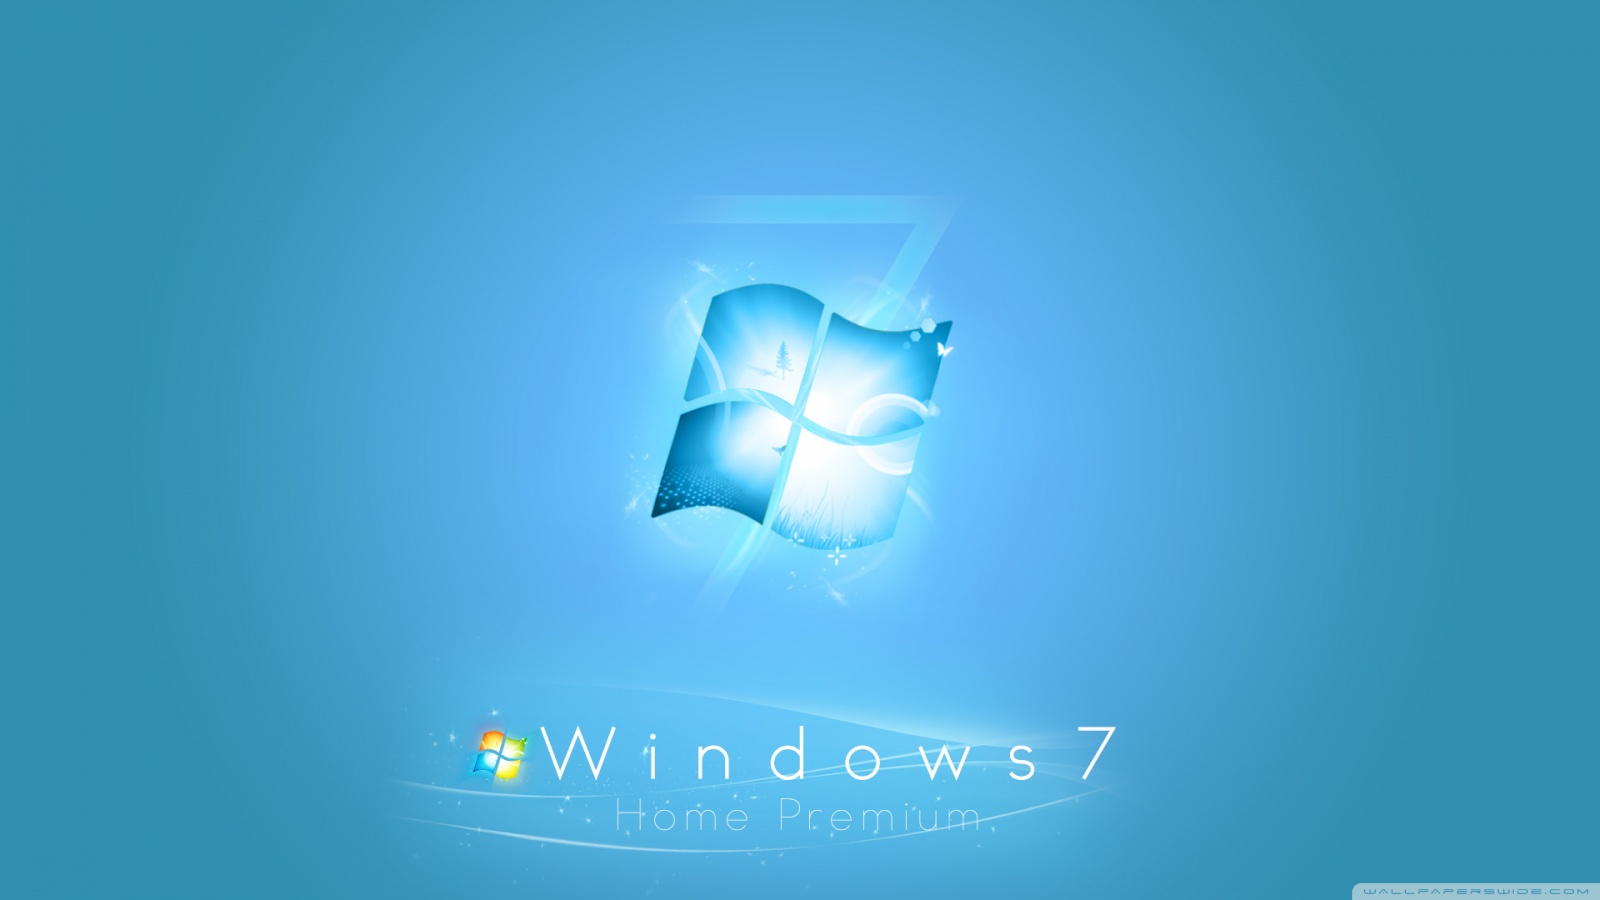 Tải miễn phí hình nền desktop Windows 7 để tạo ra một không gian làm việc độc đáo và đầy cảm hứng. Bạn có thể thể hiện phong cách và sở thích của mình thông qua hình nền desktop đẹp mắt này. Thử tải về ngay bây giờ và tìm kiếm hình nền mà bạn yêu thích để tạo ra một không gian tràn đầy sức sống!